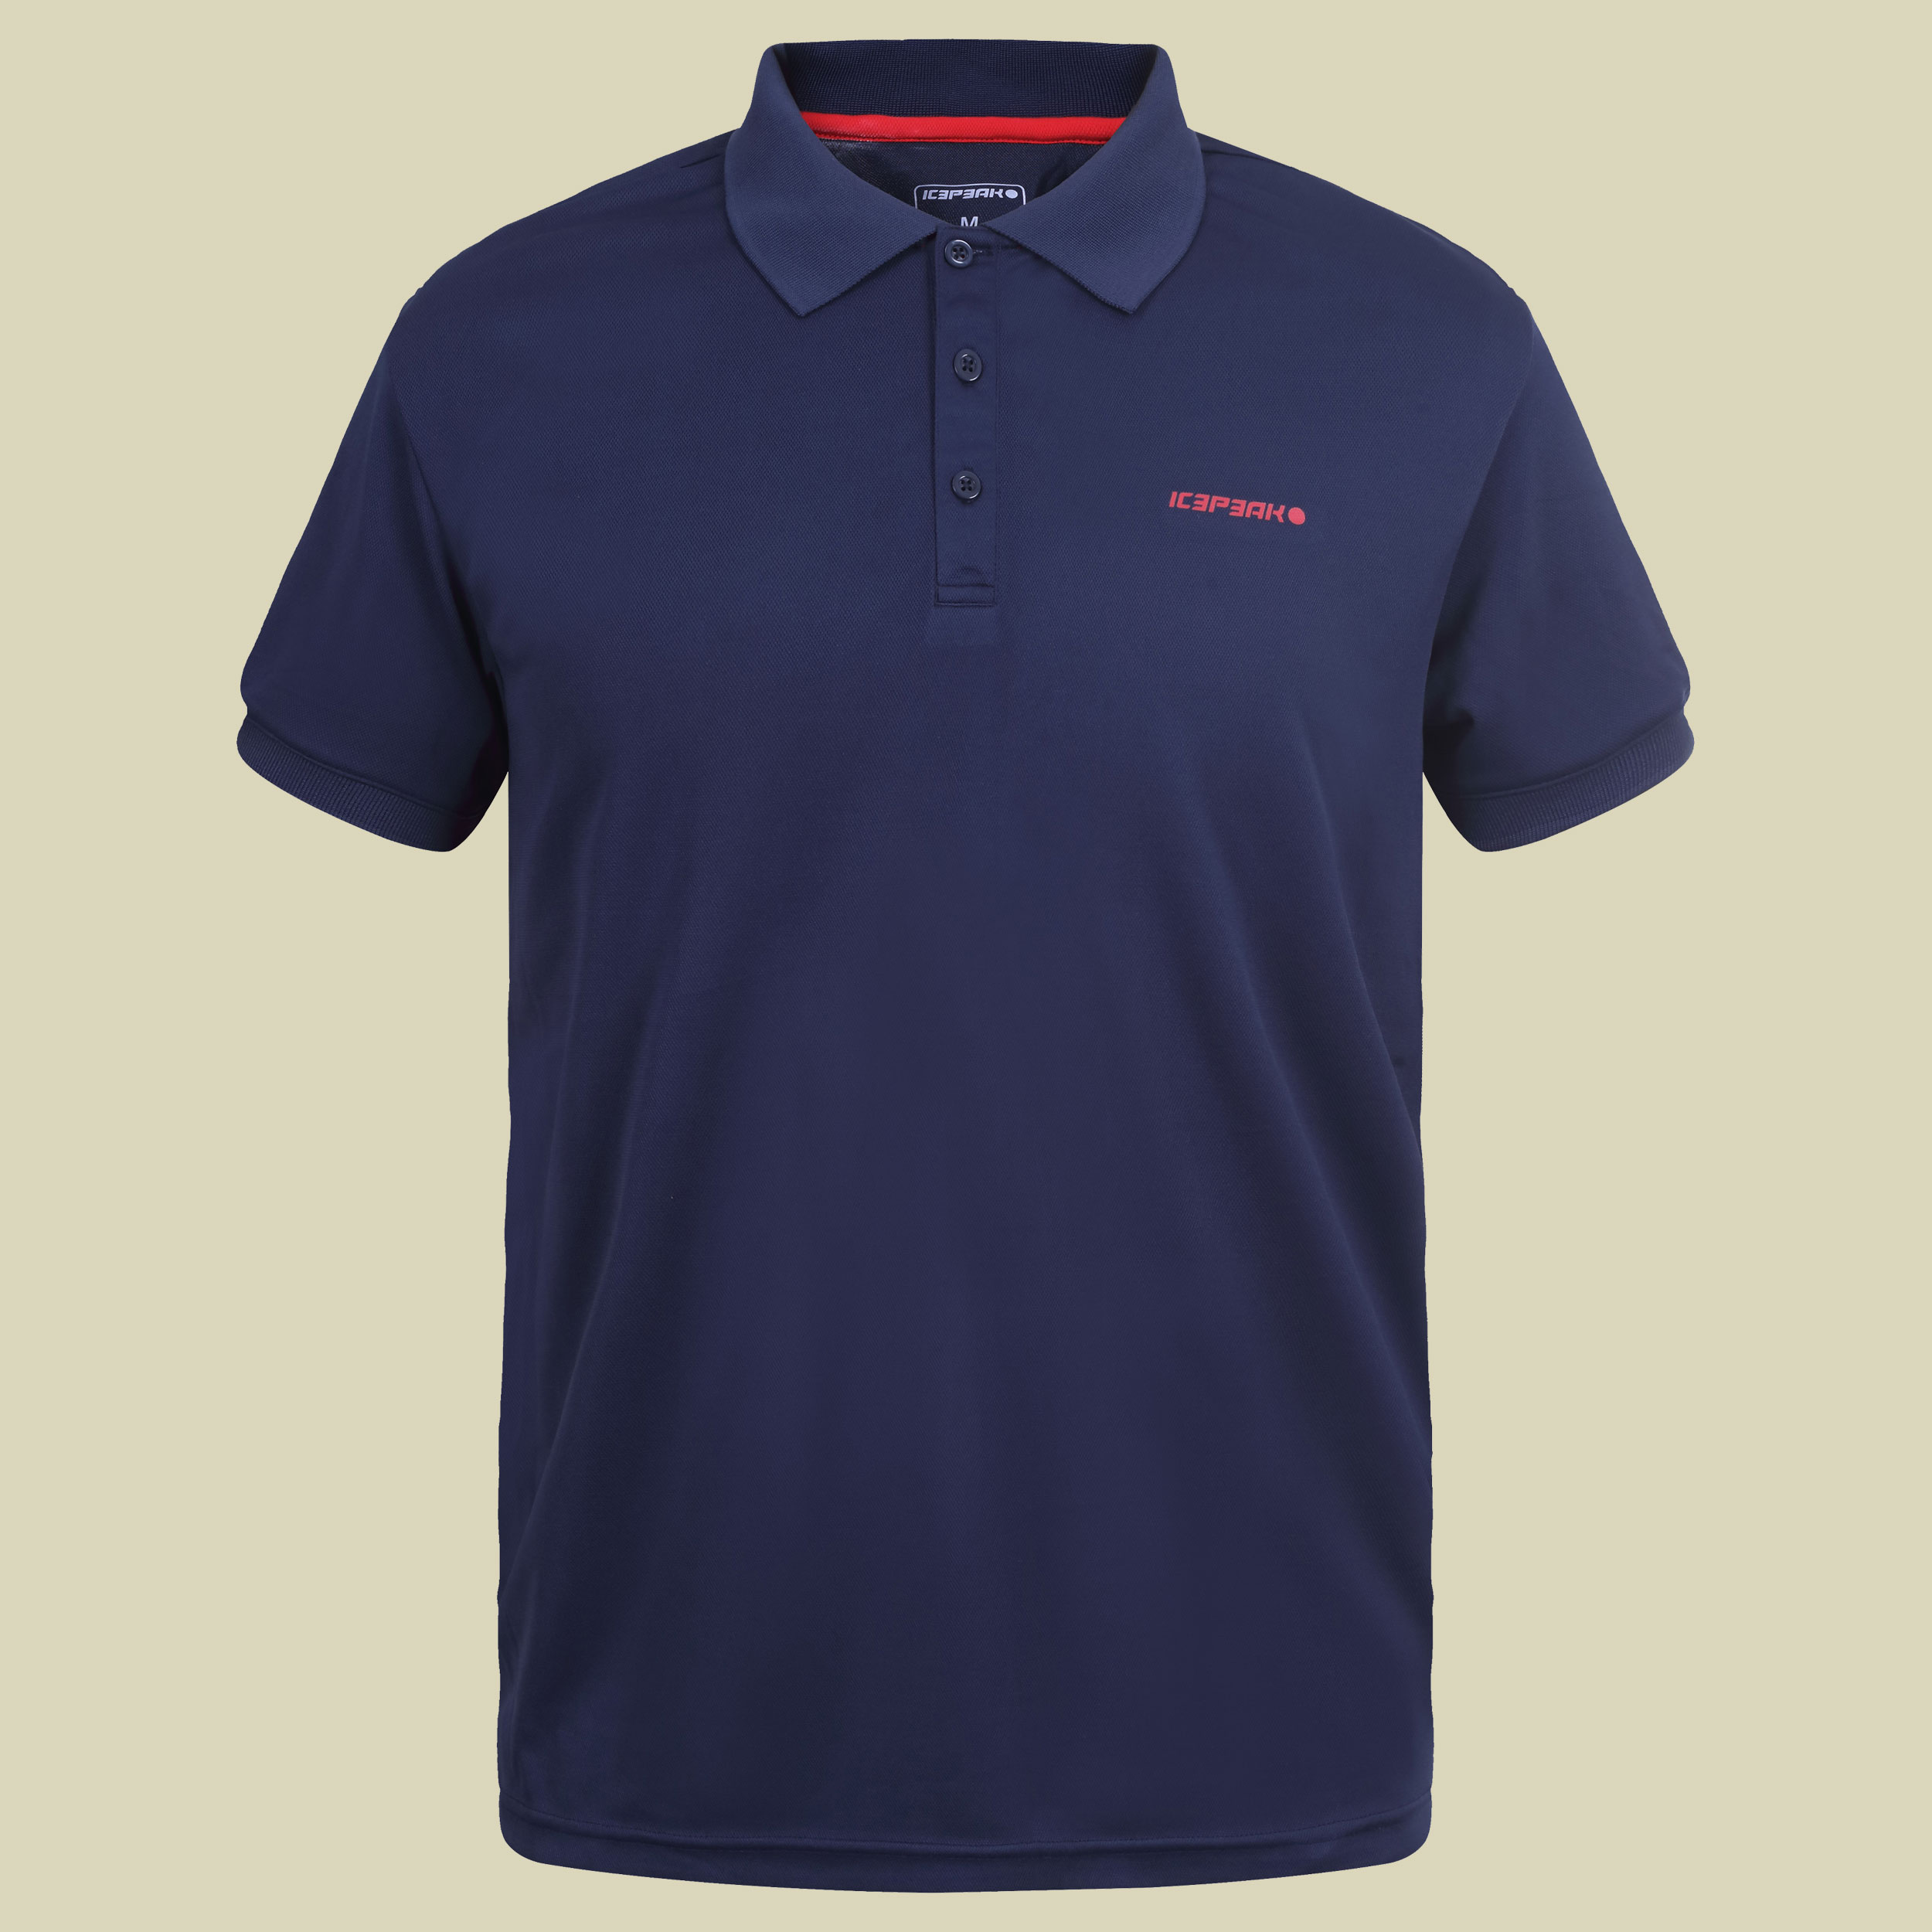 Kyan Pique Polo Shirt Men 57630 590 Größe M  Farbe FB387 navy blue